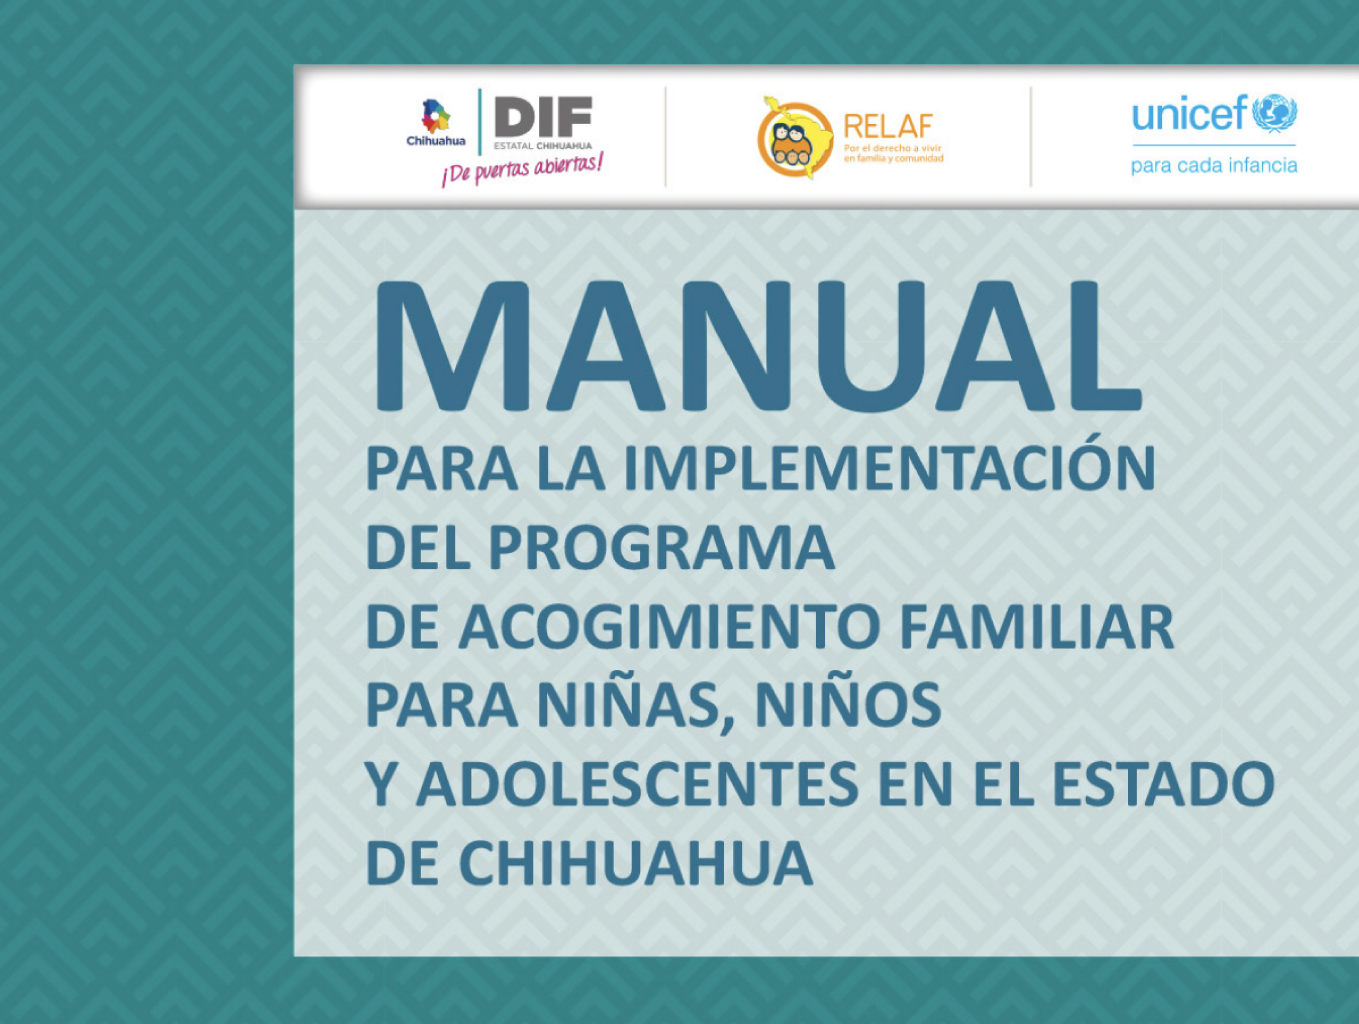 Manual para la implementación del programa de acogimiento familiar para niñas, niños y adolescentes en el estado de Chihuahua